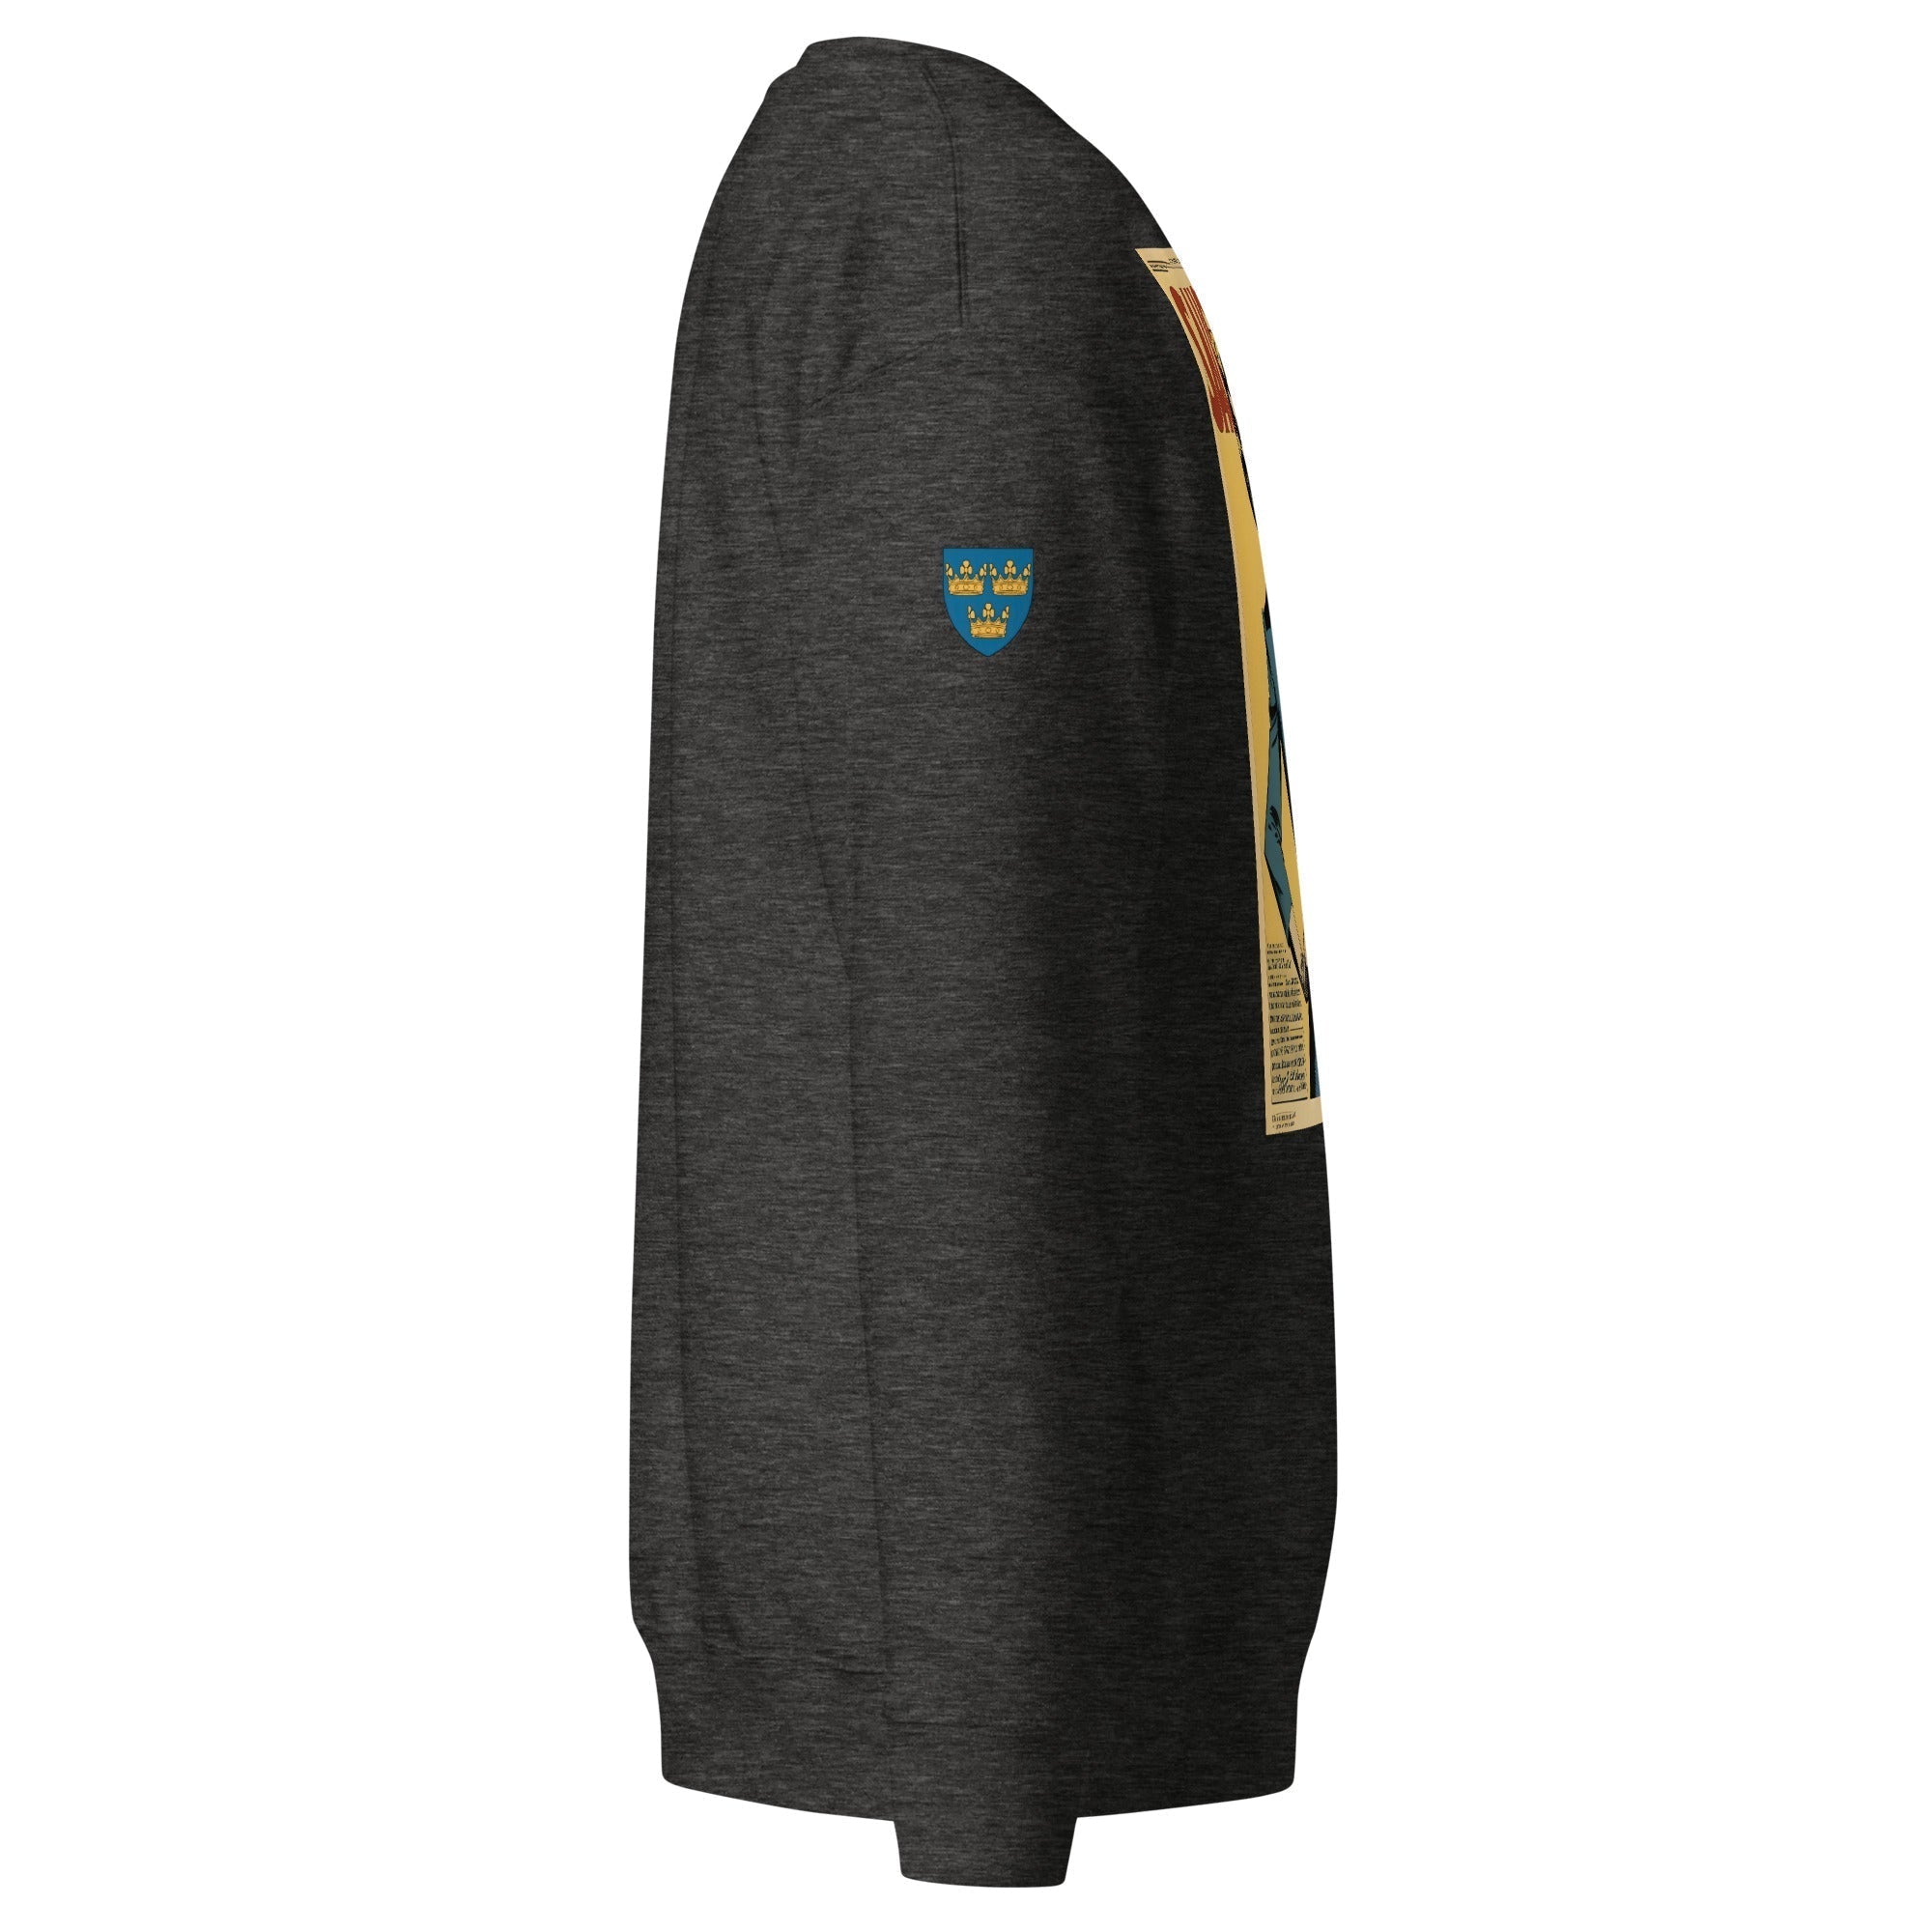 Unisex Premium Sweatshirt - Swedish Vintage Fashion Series v.28 - GRAPHIC T-SHIRTS